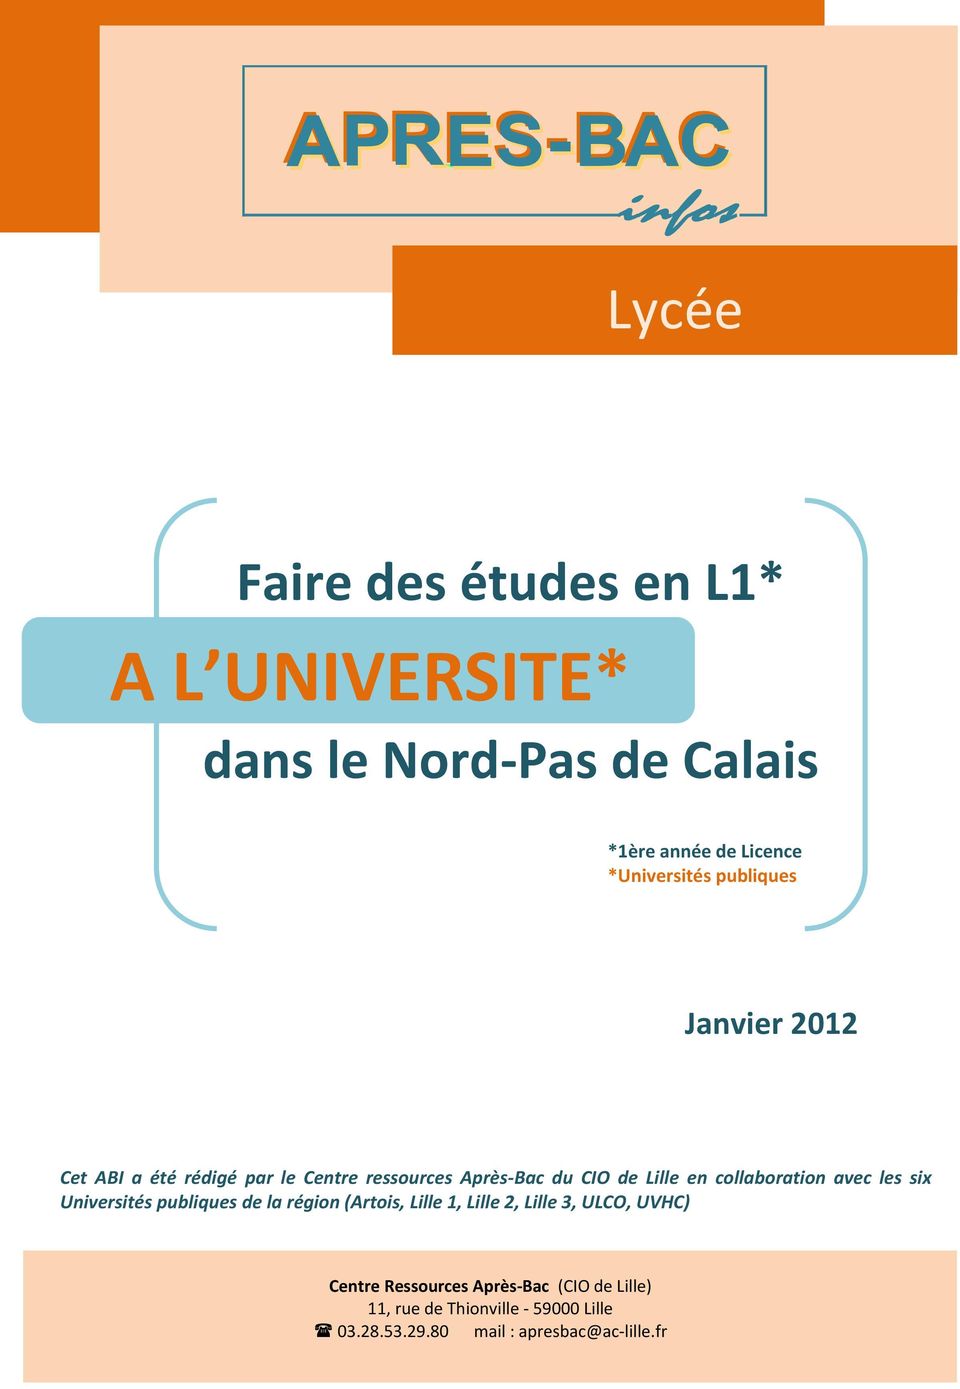 en collaboration avec les six Universités publiques de la région (Artois, Lille 1, Lille 2, Lille 3, ULCO, UVHC)